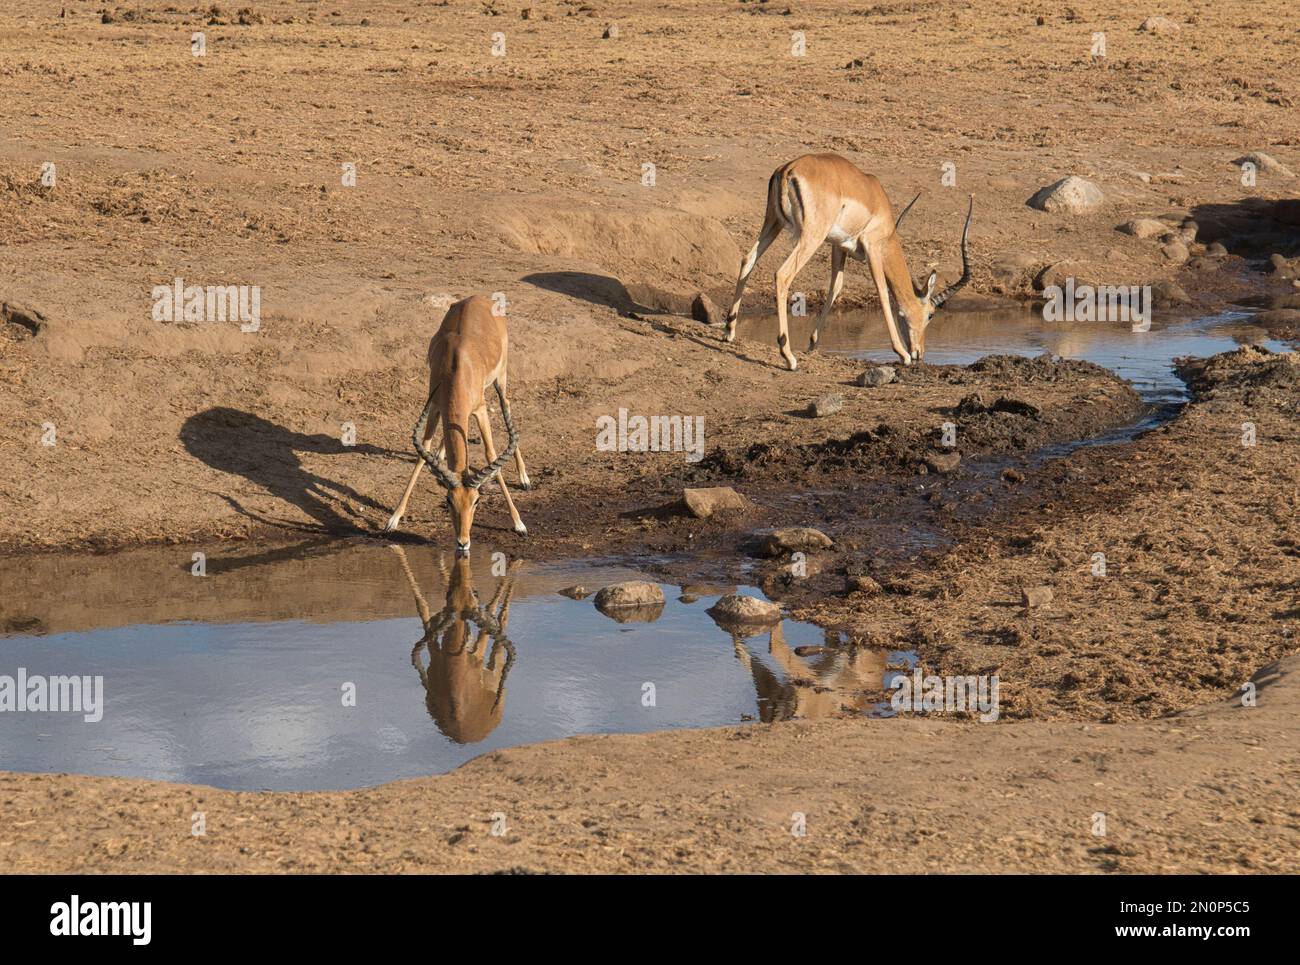 Deux hommes adultes, l'impala (Aepyceros melampus), buvant dans un point d'eau Banque D'Images